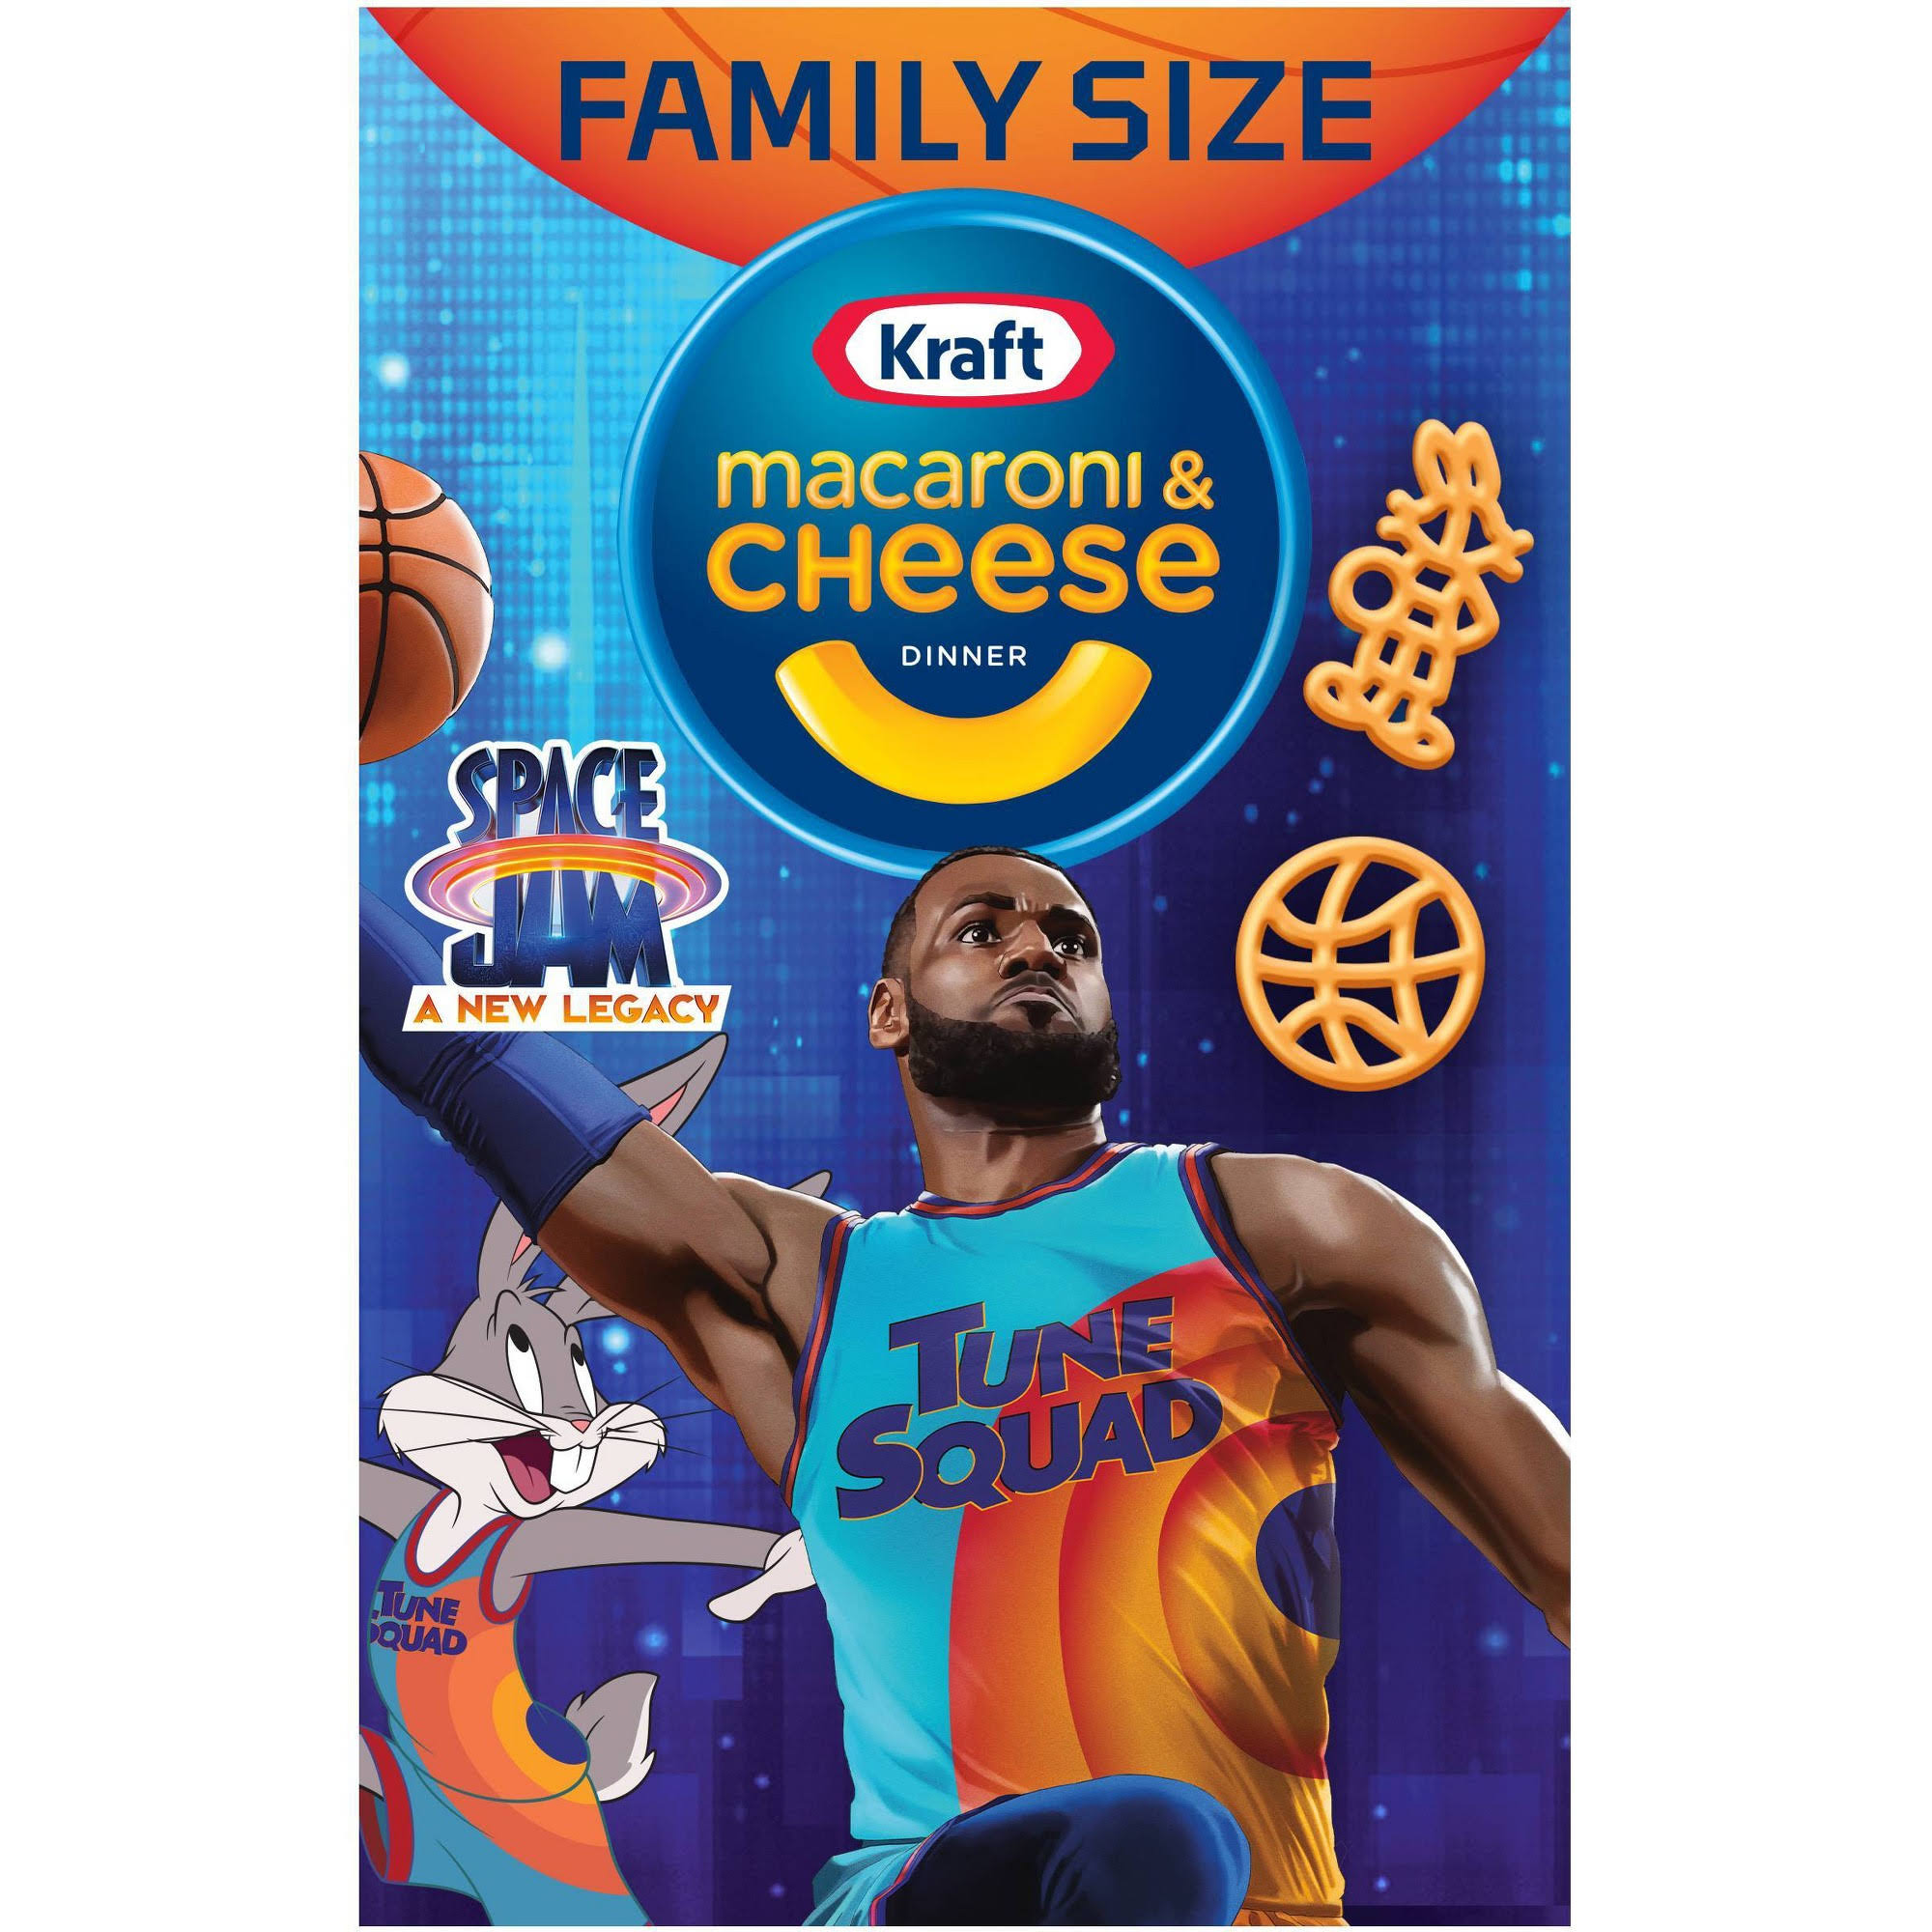 Kraft Macaroni & Cheese Dinner, Family Size - 14.5 oz